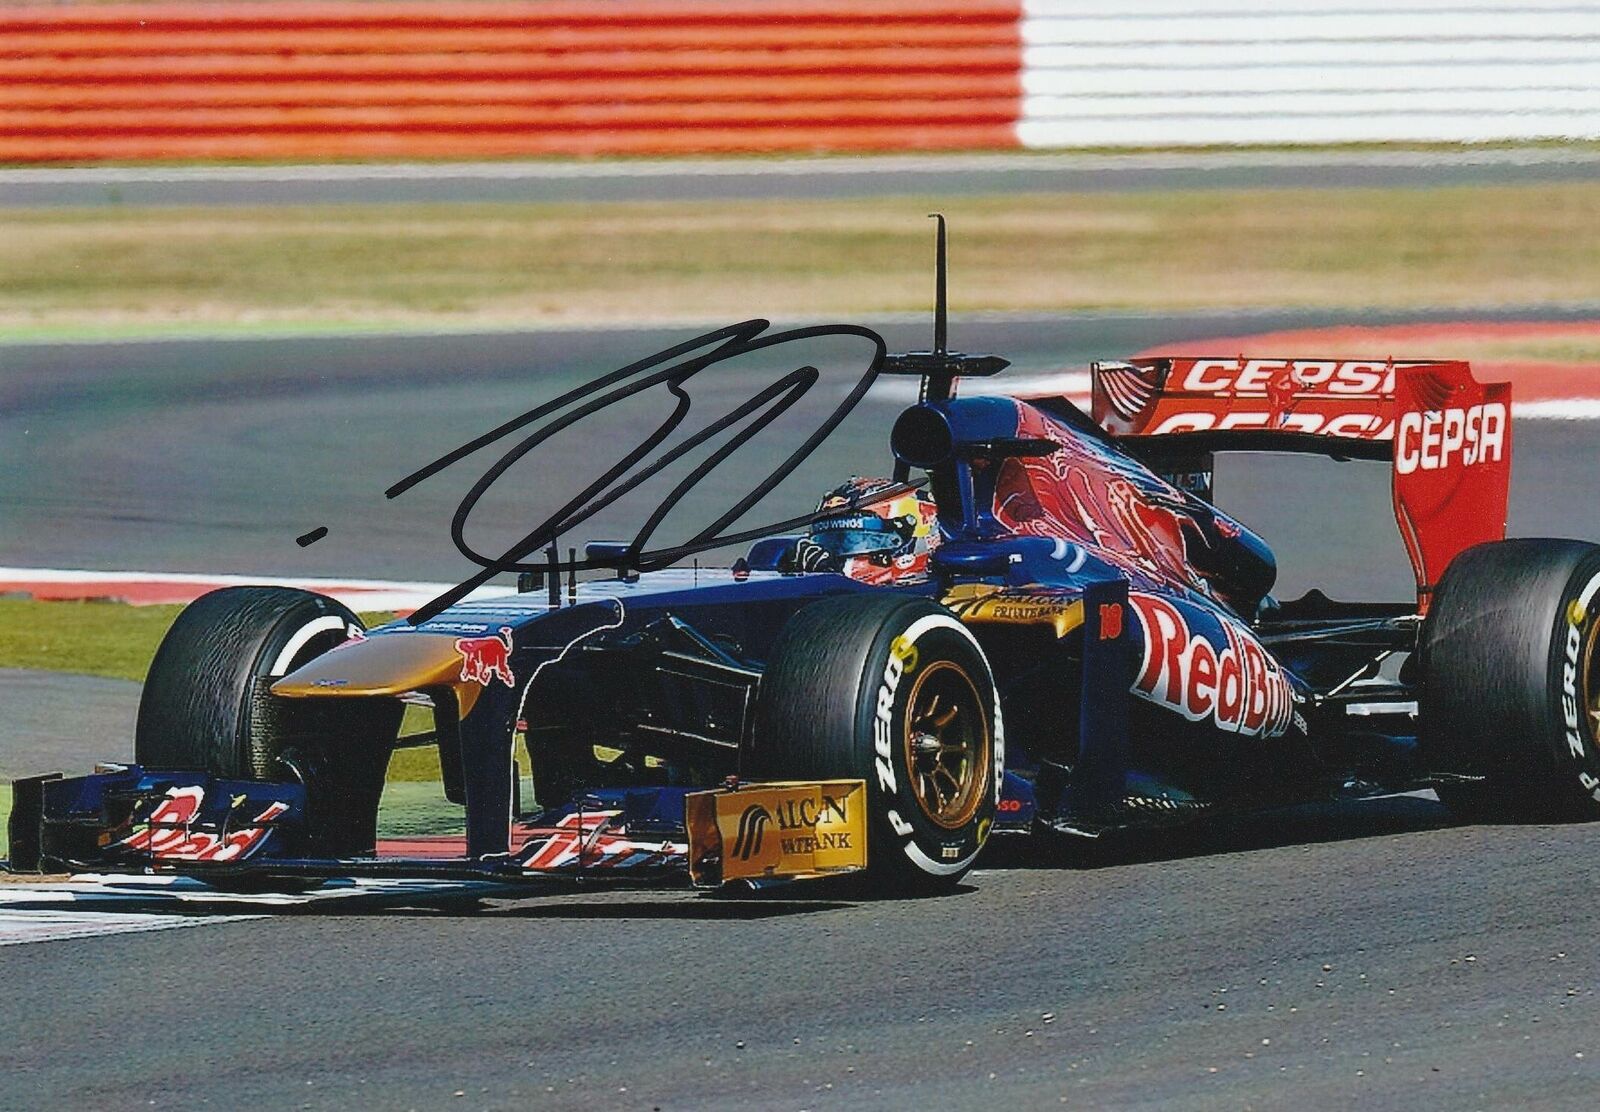 Danii Kvyat - Orig Signed Photo: Former Grand Prix-driver